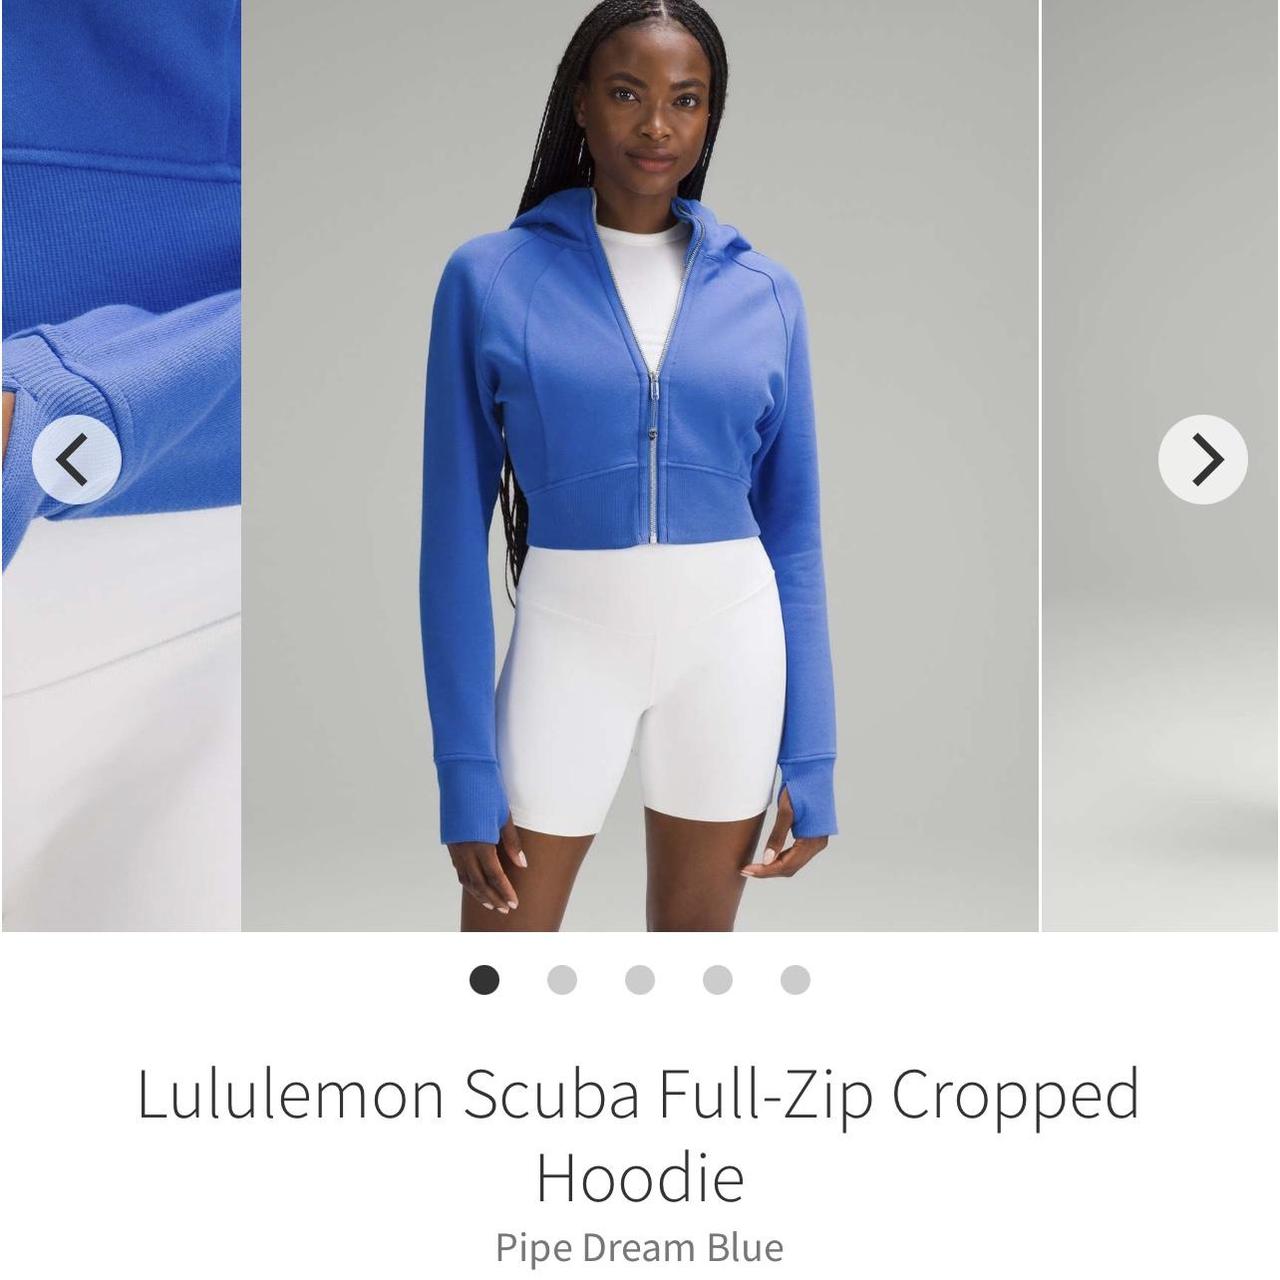 Lululemon Scuba Full-Zip Cropped Hoodie